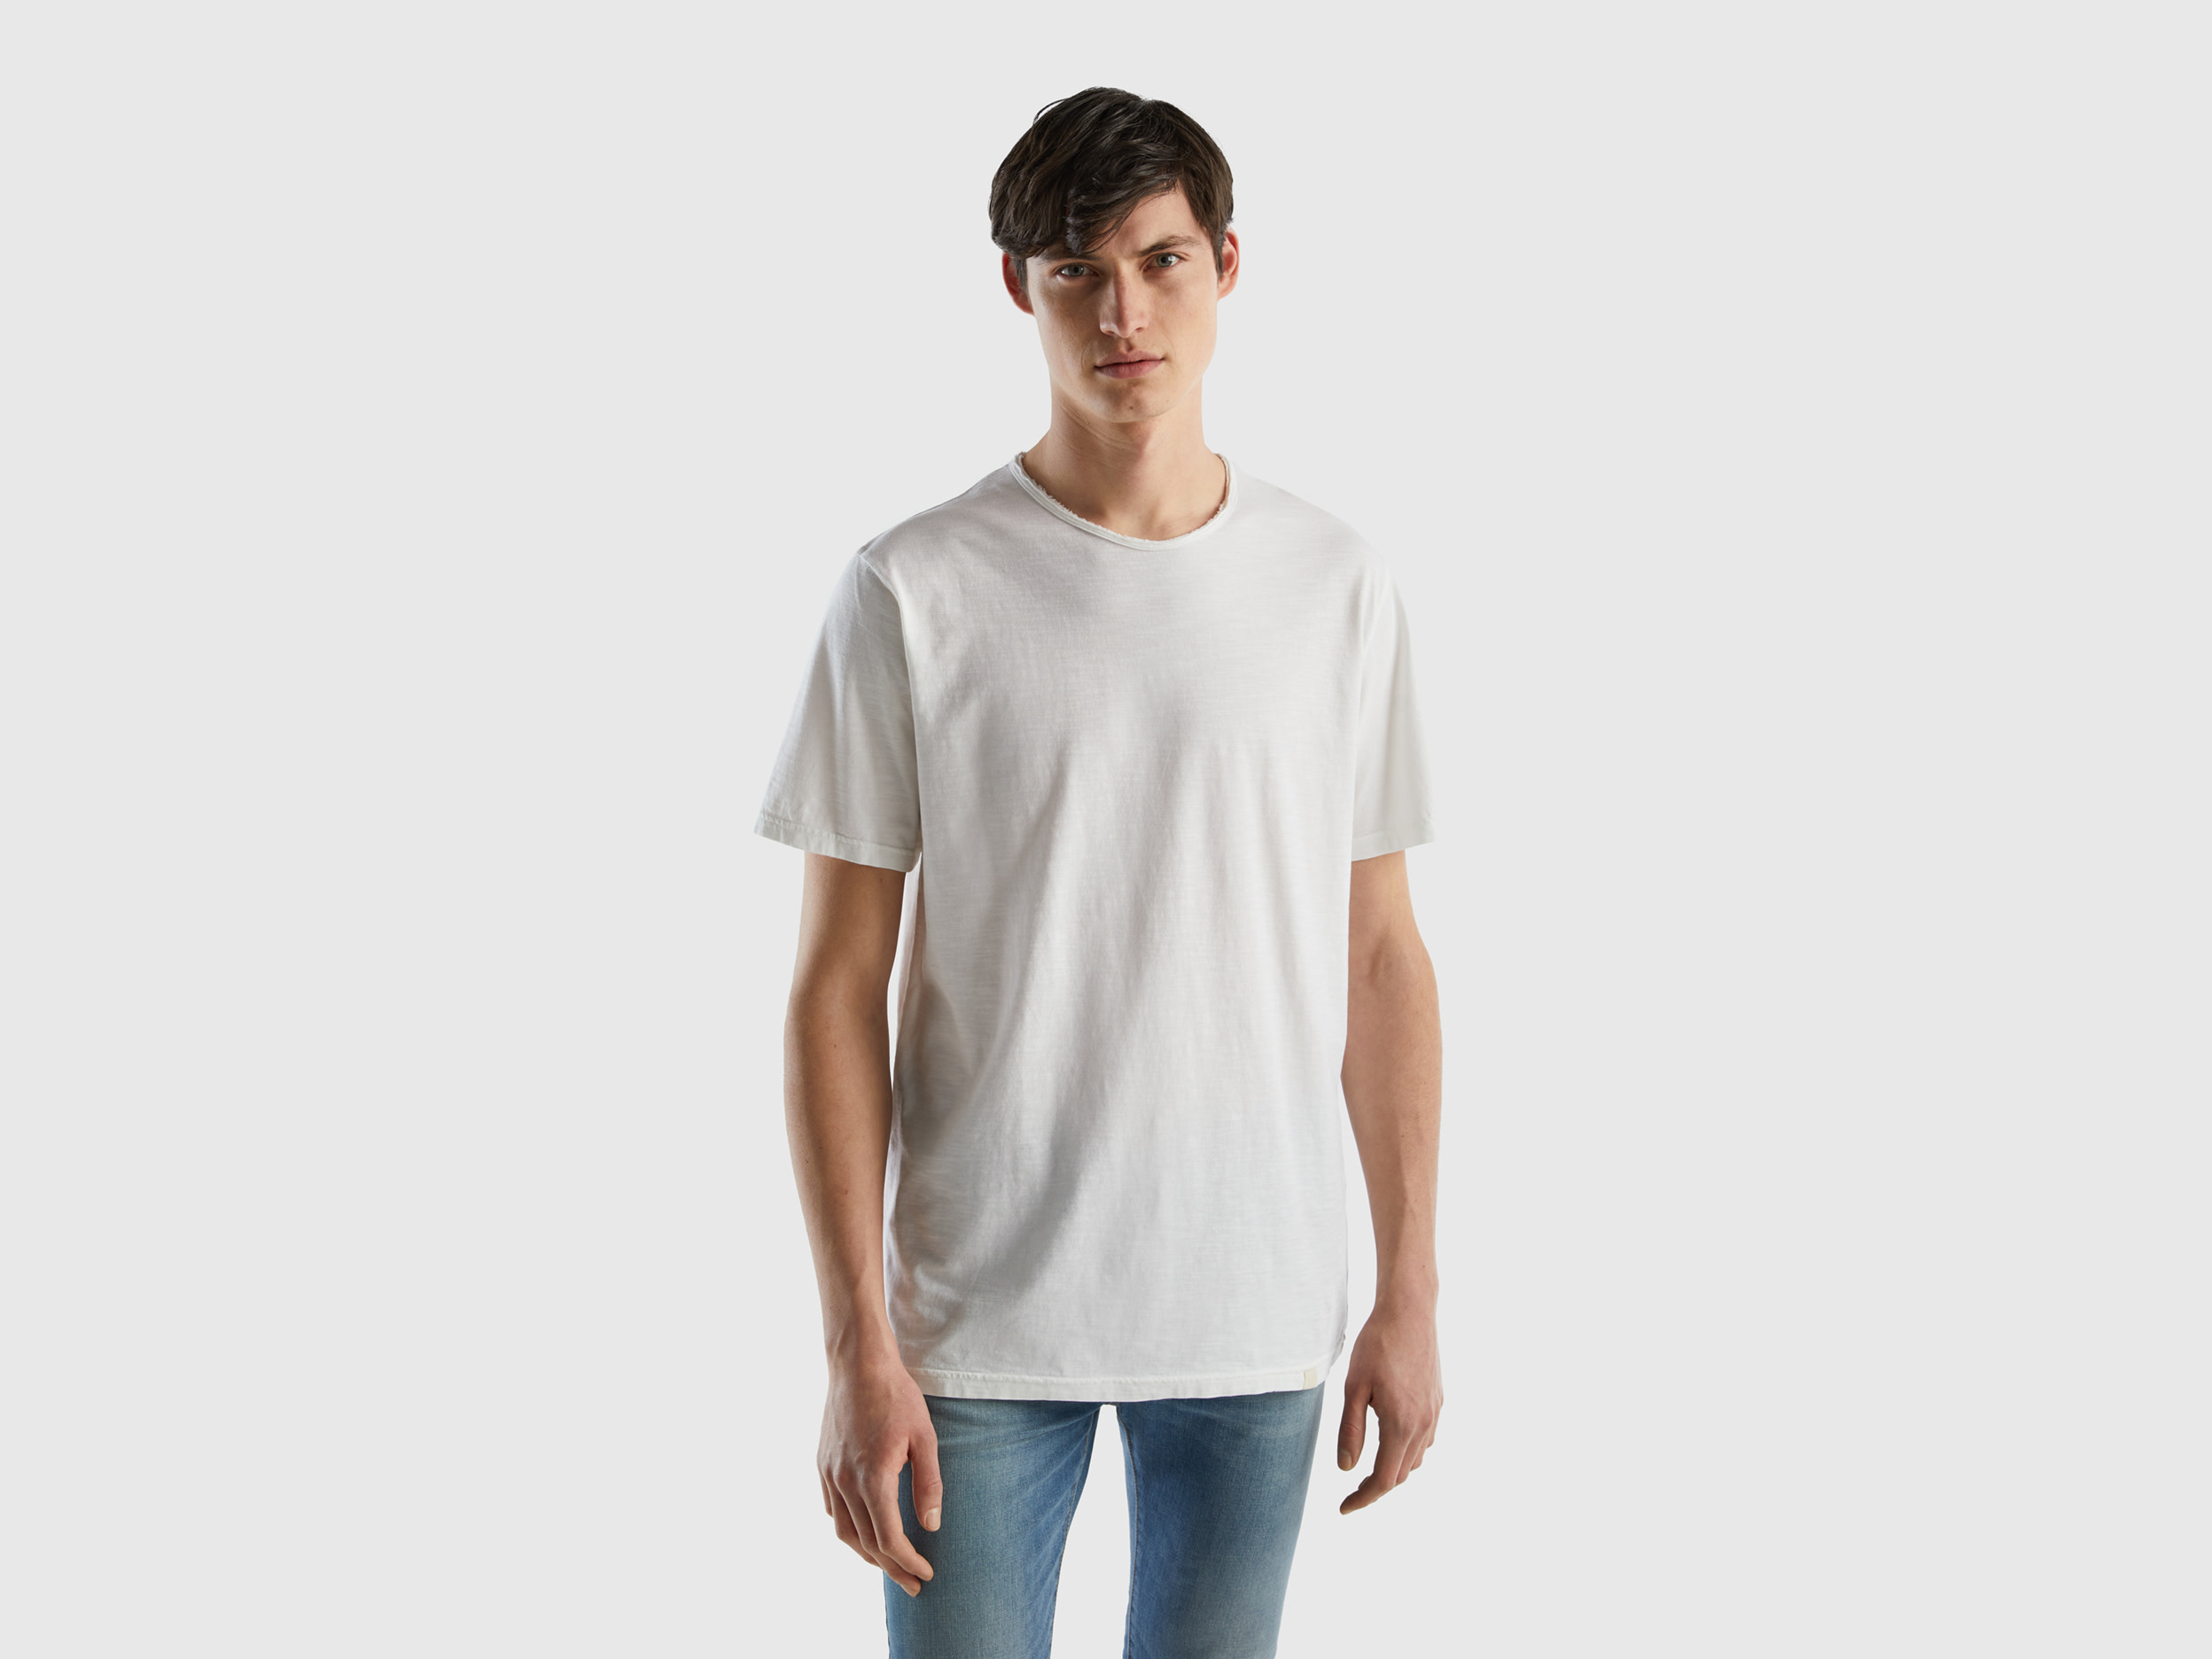 Benetton, White T-shirt In Slub Cotton, size S, White, Men